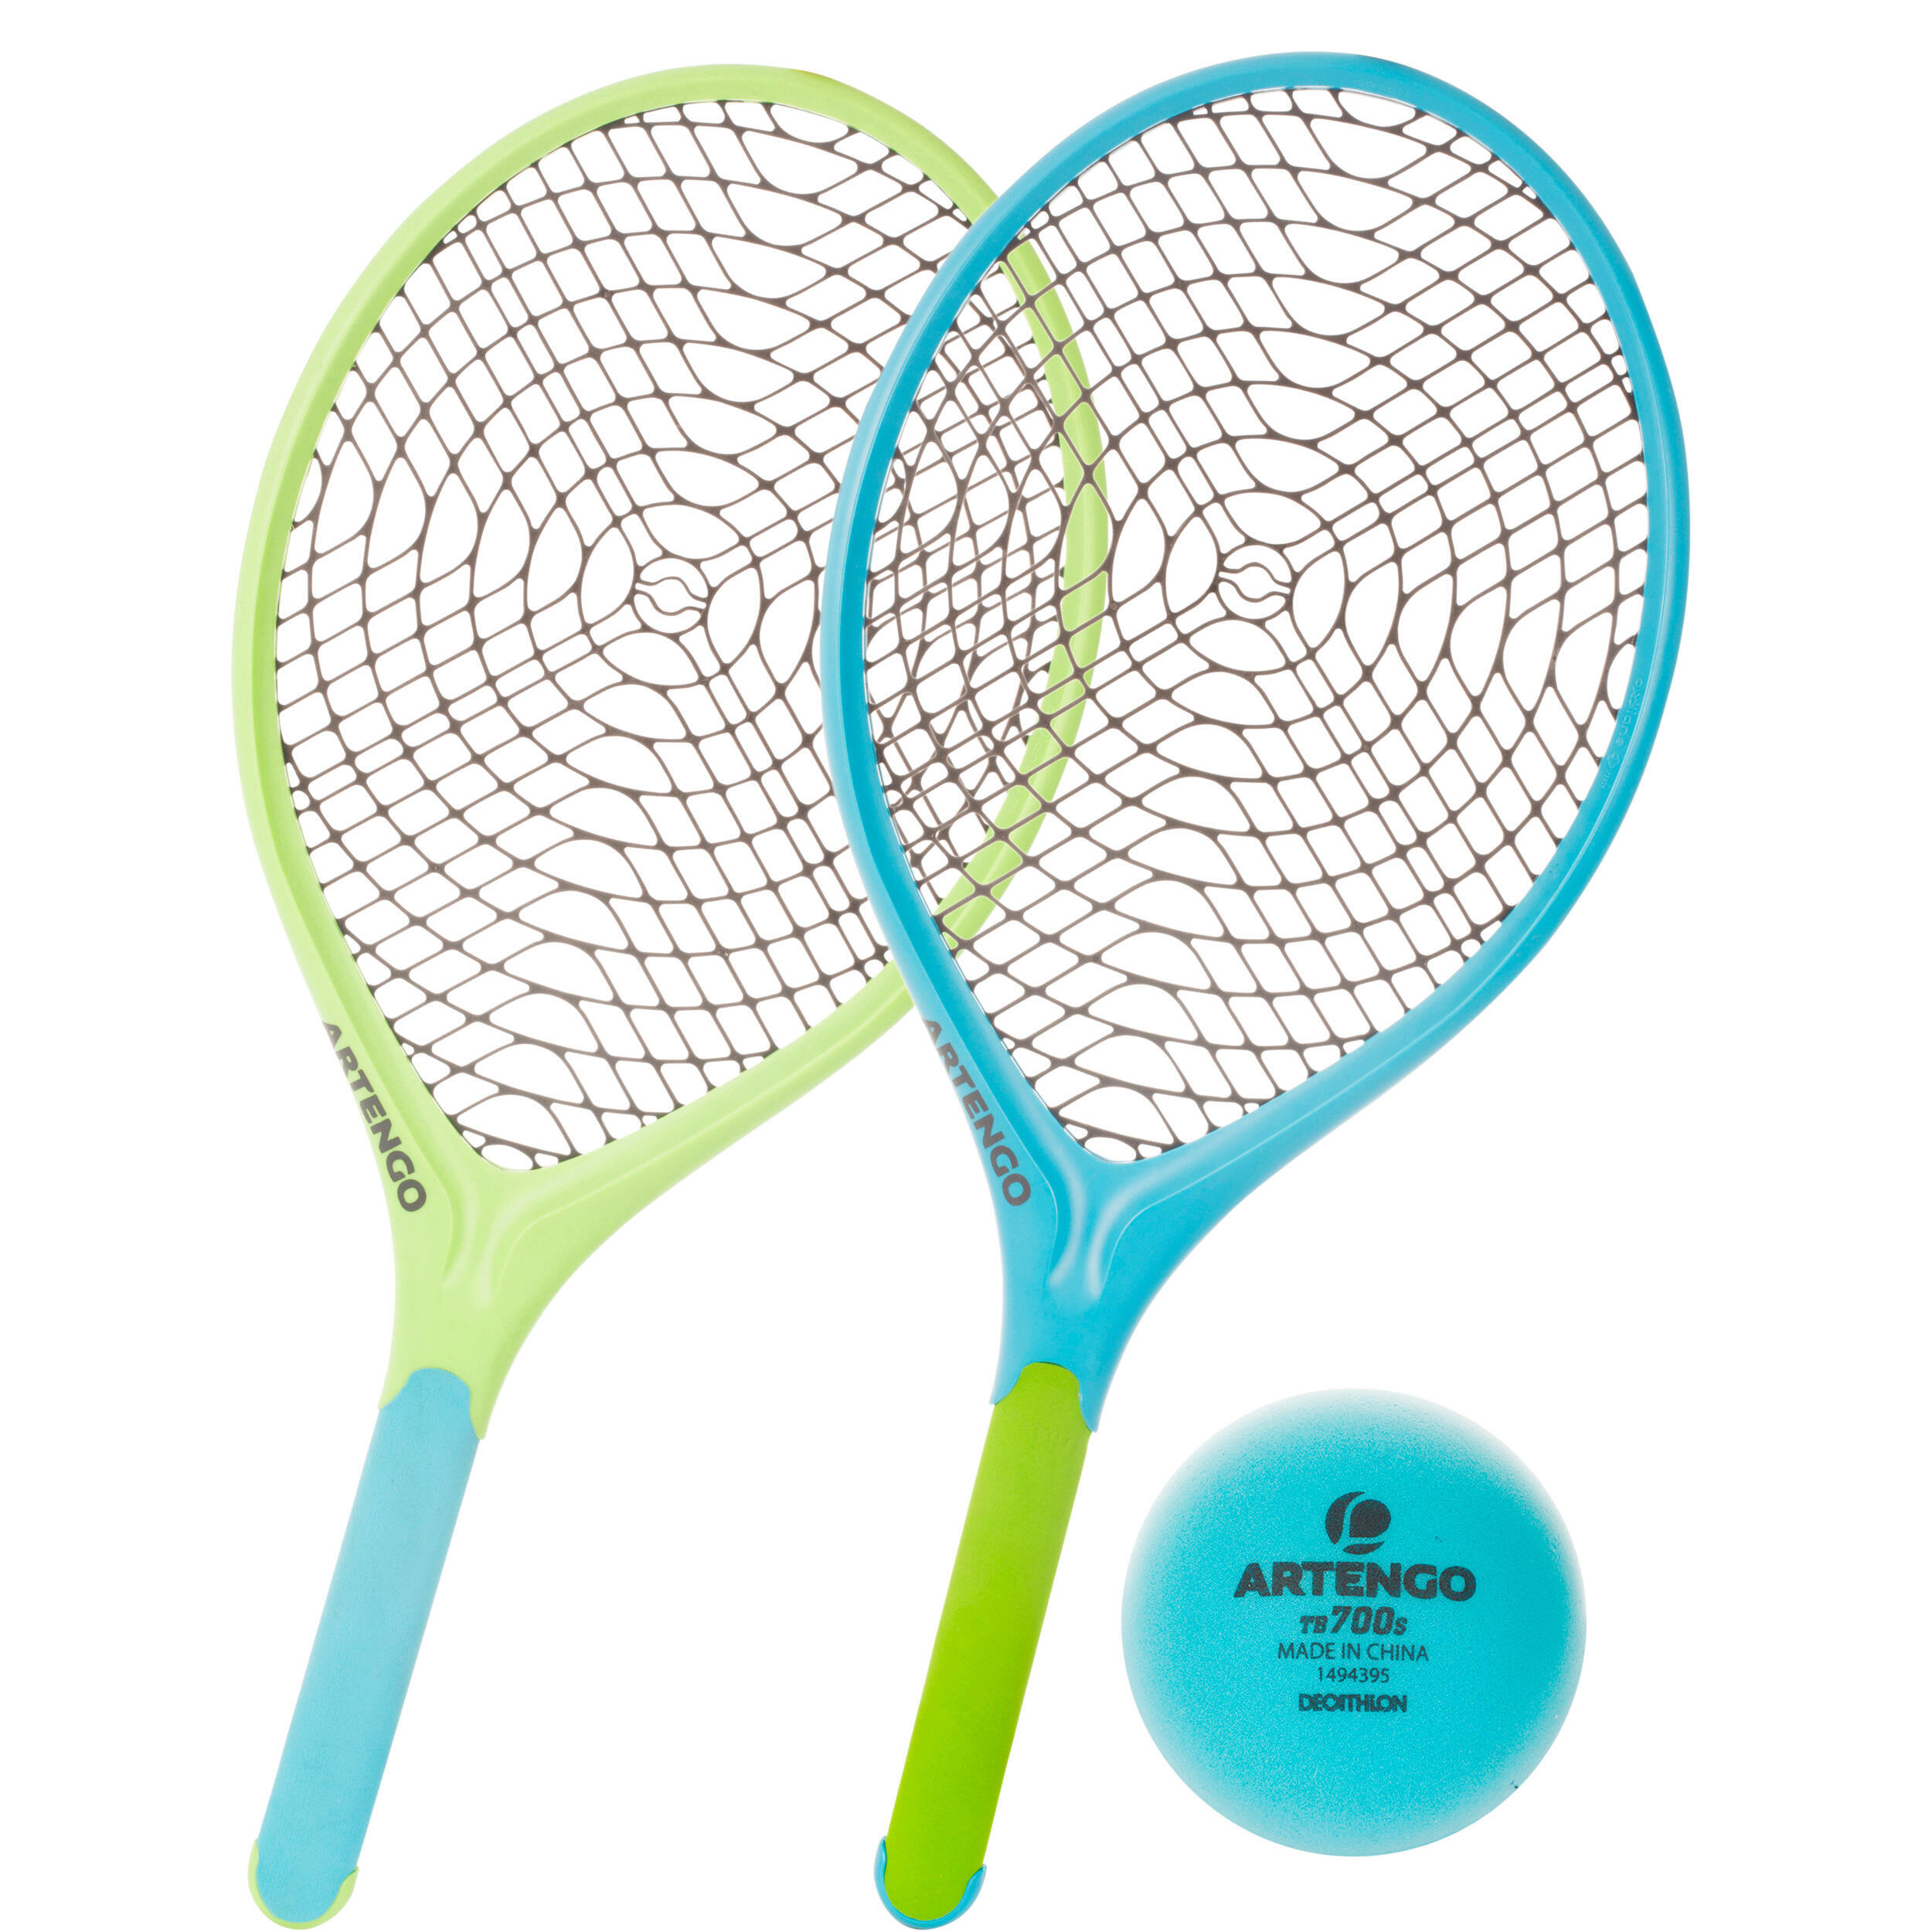 Ракетки для тенниса набор. ARTENGO ракетки для большого тенниса. ARTENGO набор для тенниса. ARTENGO ракетки для настольного тенниса. Теннисная ракетка Декатлон.